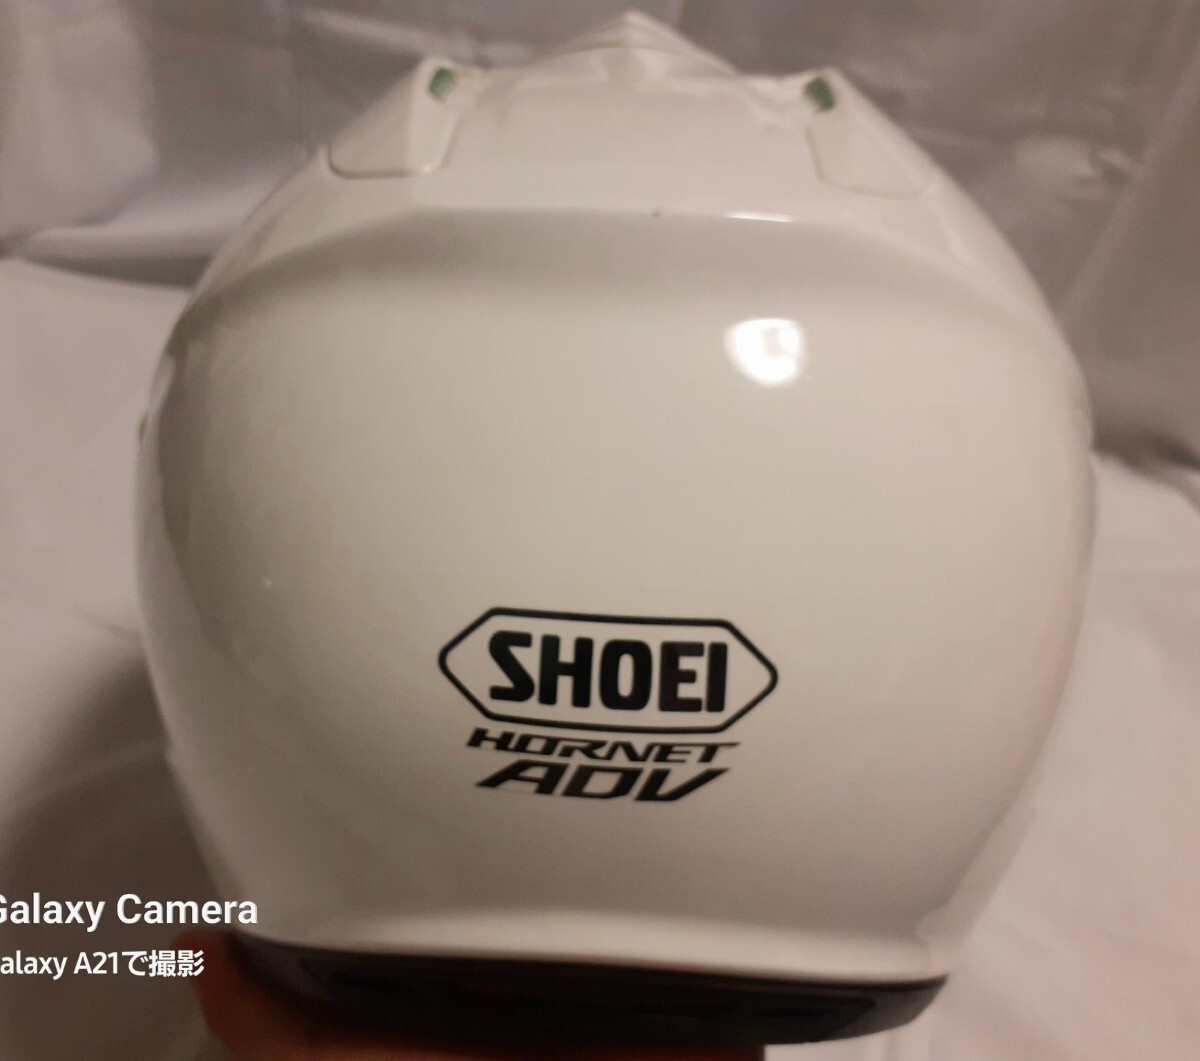 SHOEI ショウエイ HORNET ホーネット ADV アドベンチャー オフロード ヘルメットused 57cm M_画像8